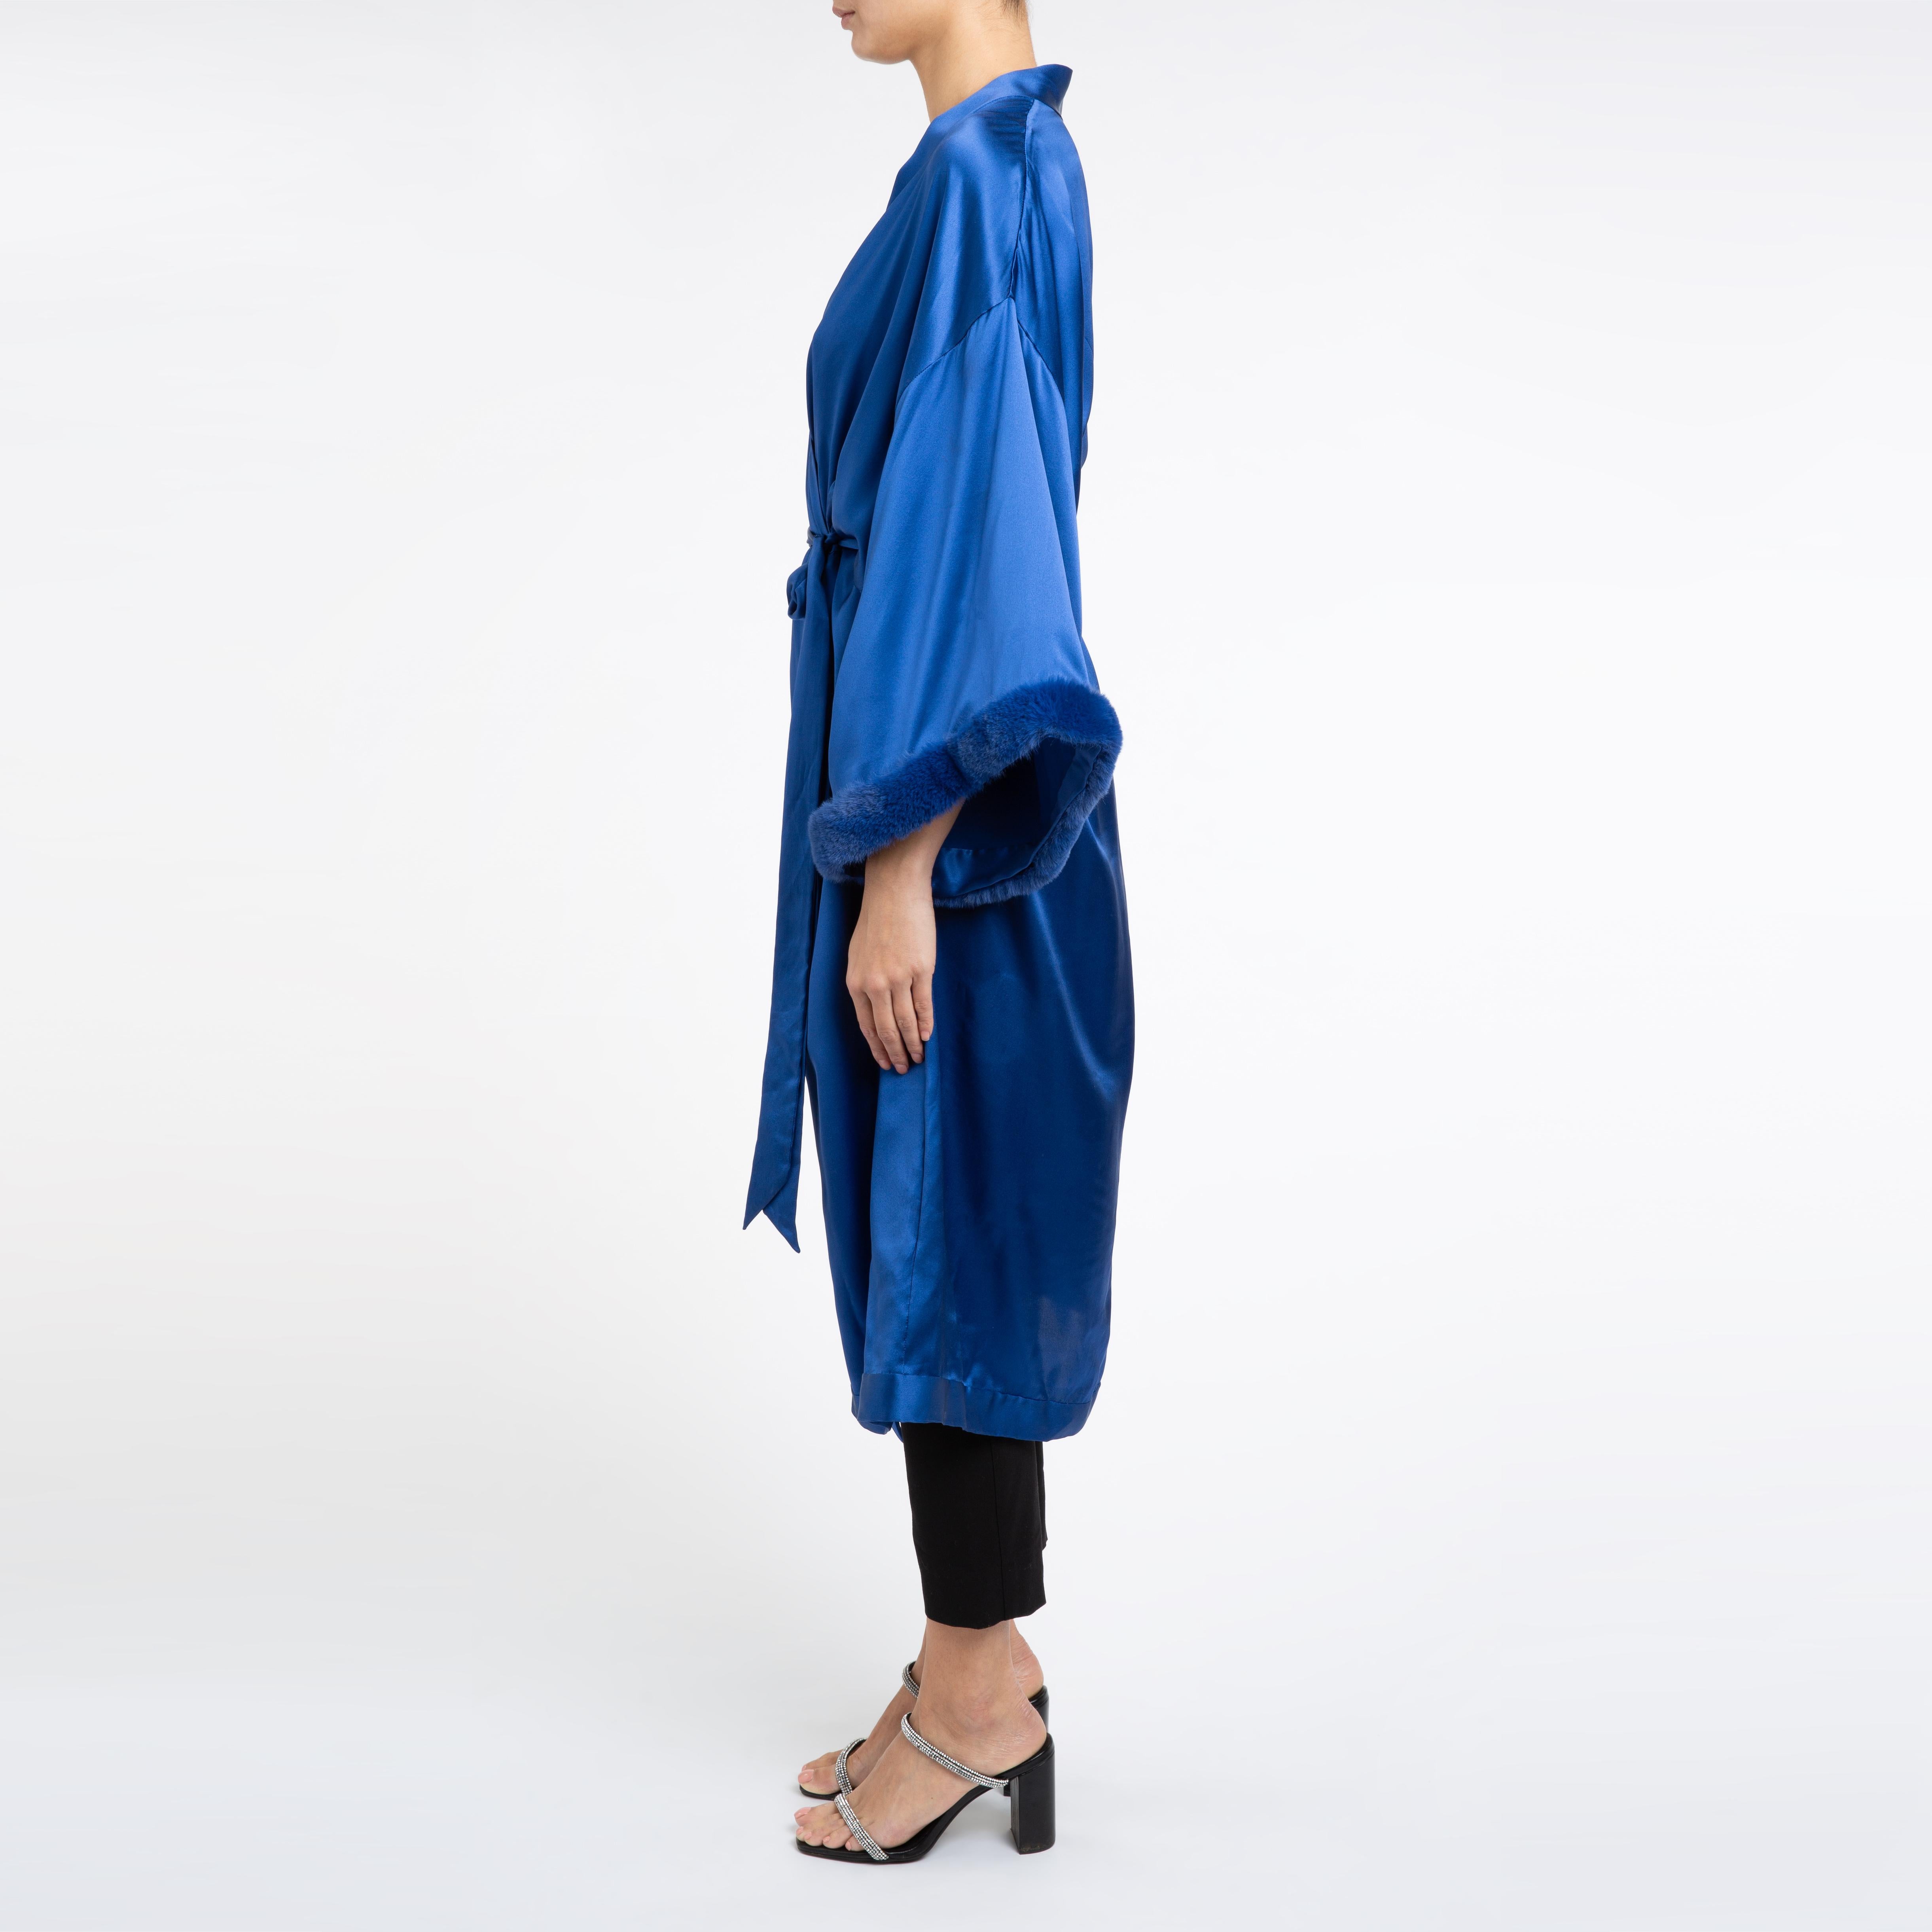 Women's Verheyen London Blue Kimono in Italian Silk Satin with Faux Fur - One size  For Sale